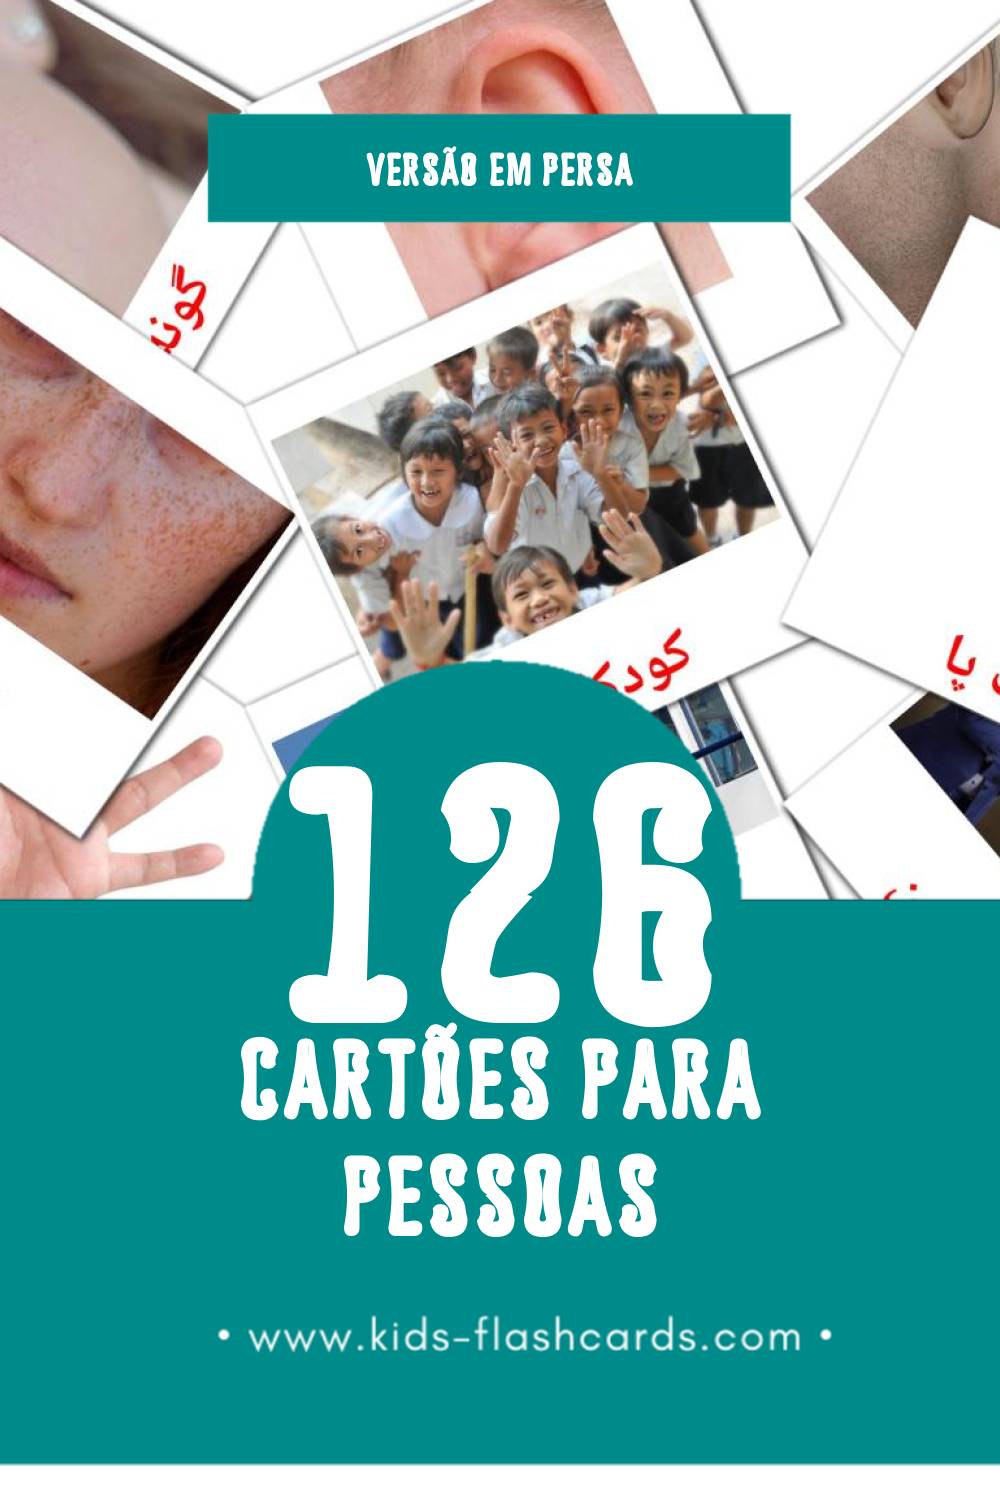 Flashcards de مردم Visuais para Toddlers (126 cartões em Persa)